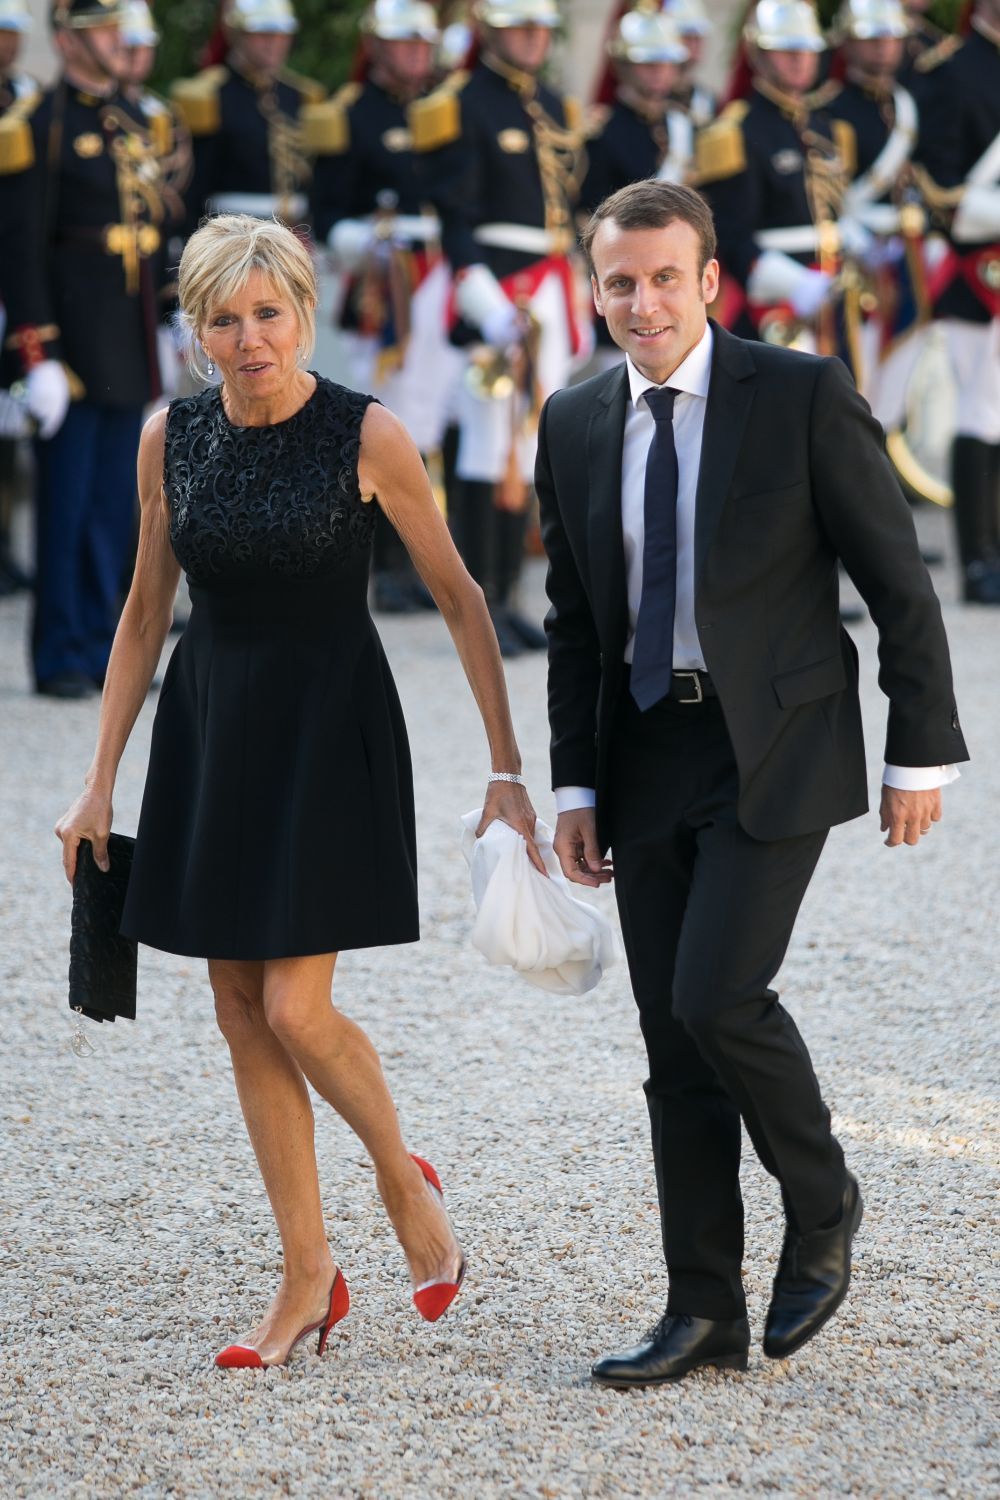 Povestea de dragoste dintre Emmanuel Macron si sotia sa a facut inconjurul planetei. Cum arata cele doua fiice ale ei